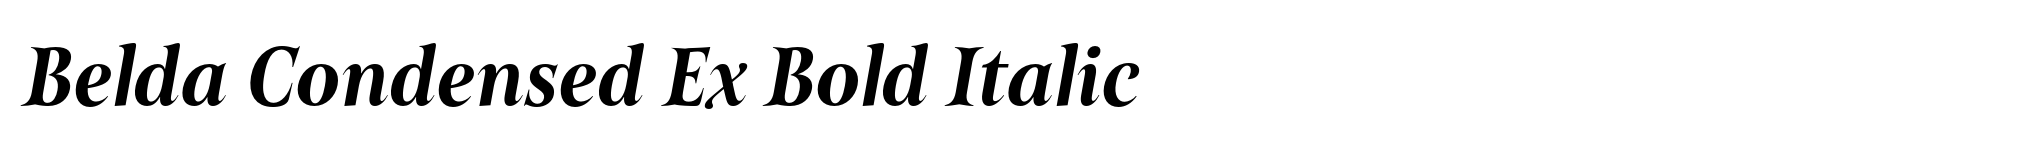 Belda Condensed Ex Bold Italic image